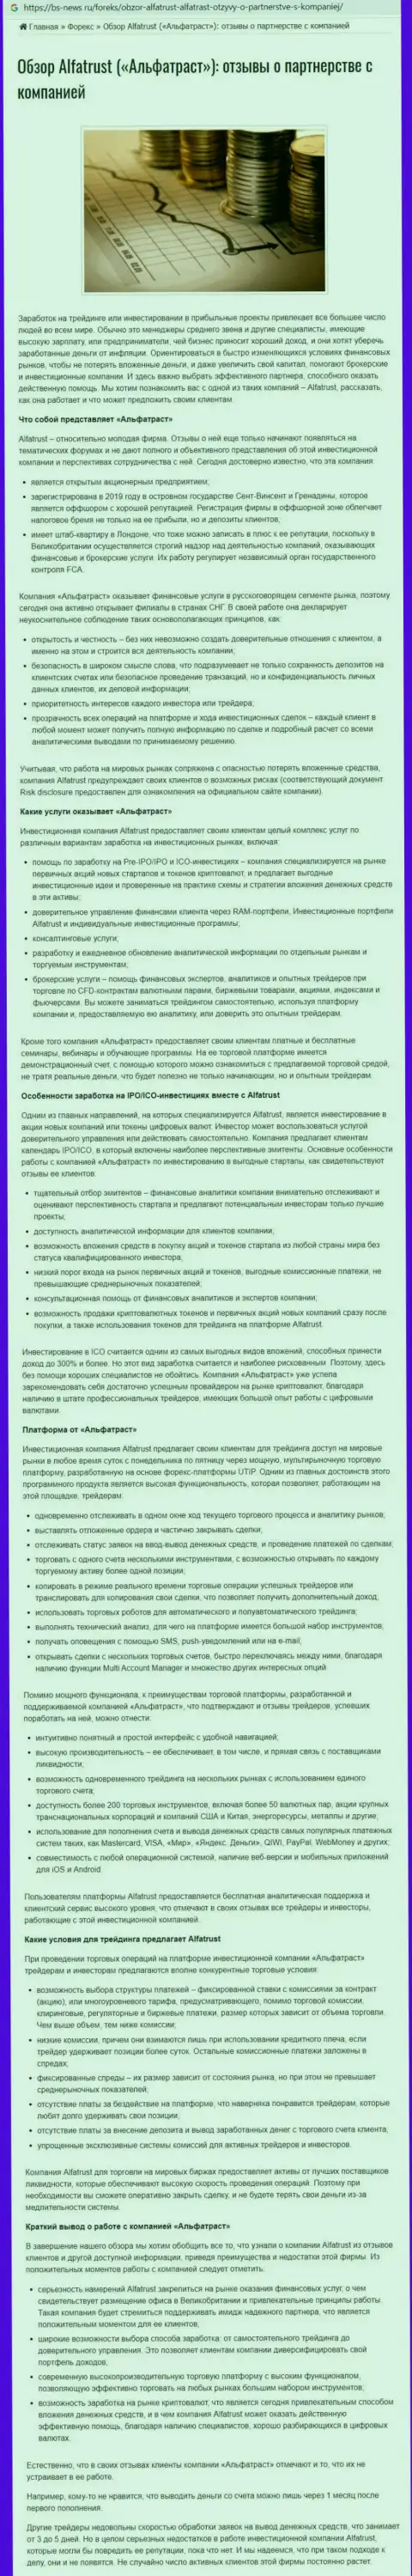 Веб-сайт bs news ru представил обзорную статью о FOREX дилере Альфа Траст